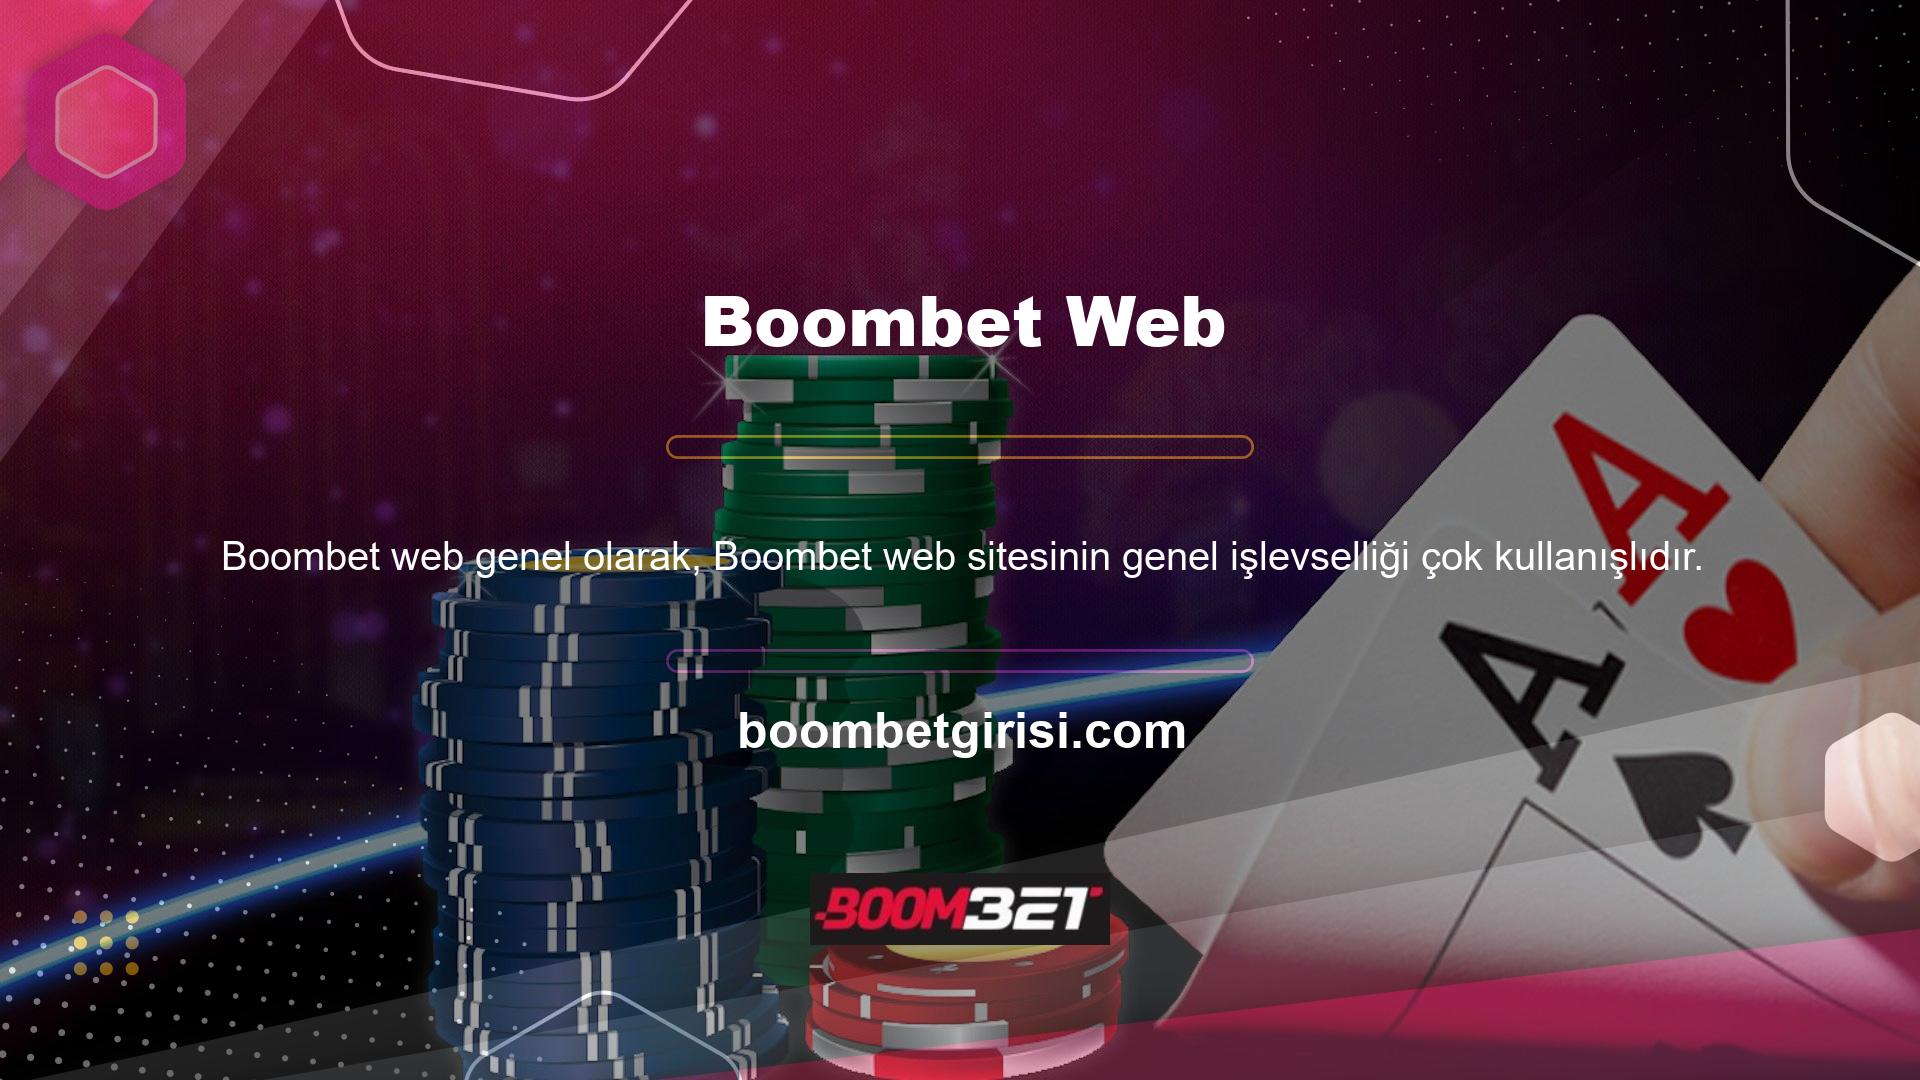 Bunun başlıca nedeni Boombet web sitesinin insancıl hizmet anlayışıdır